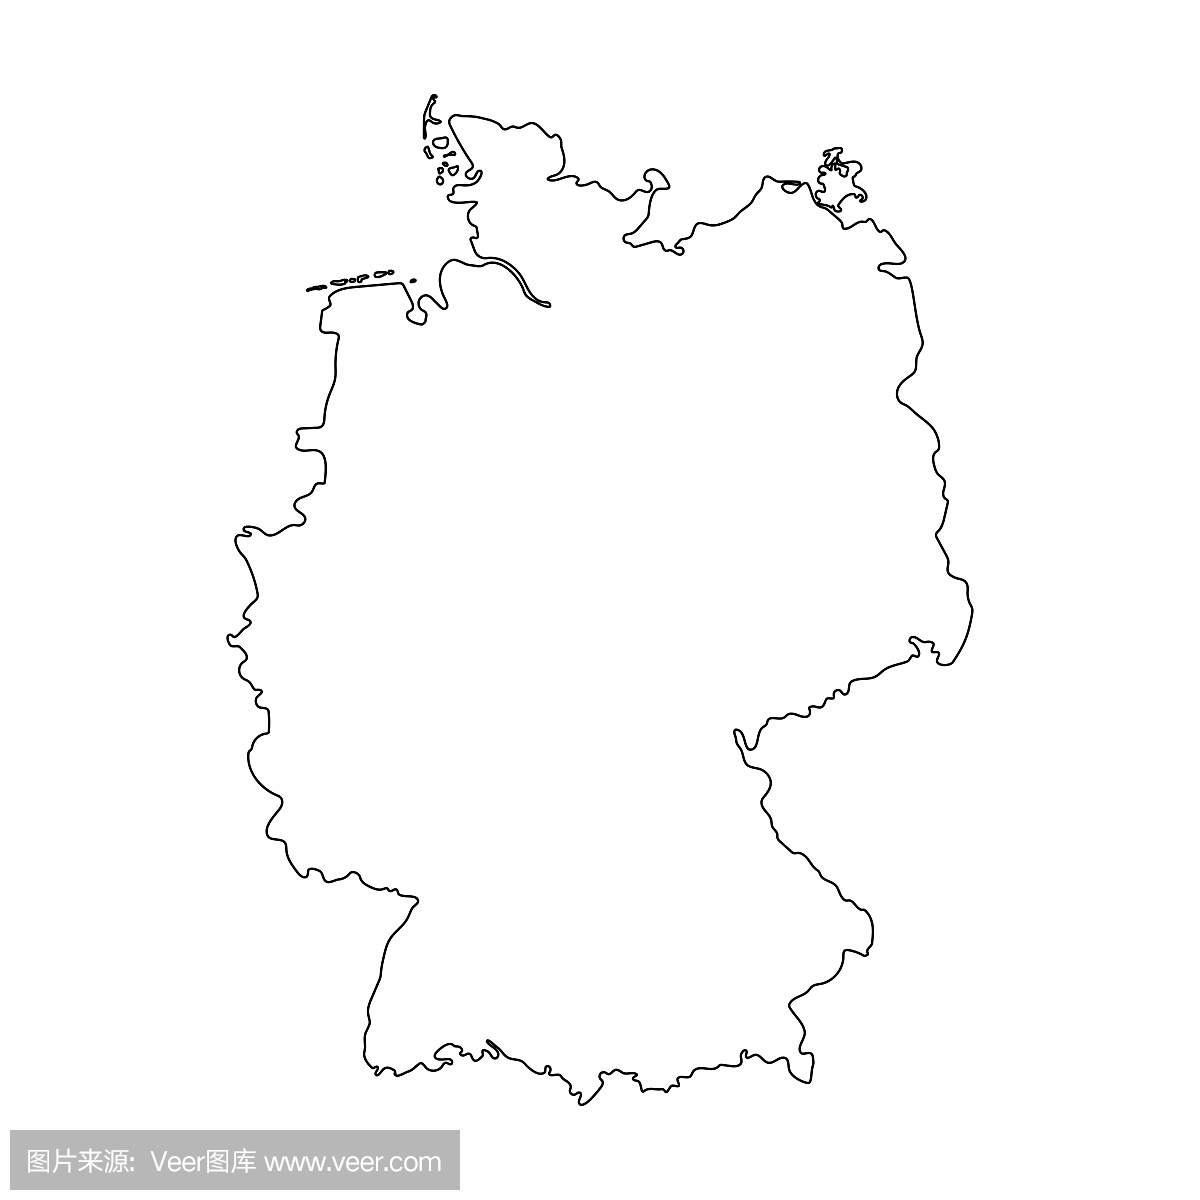 德国地图轮廓图形徒手画在白色背景上。矢量图